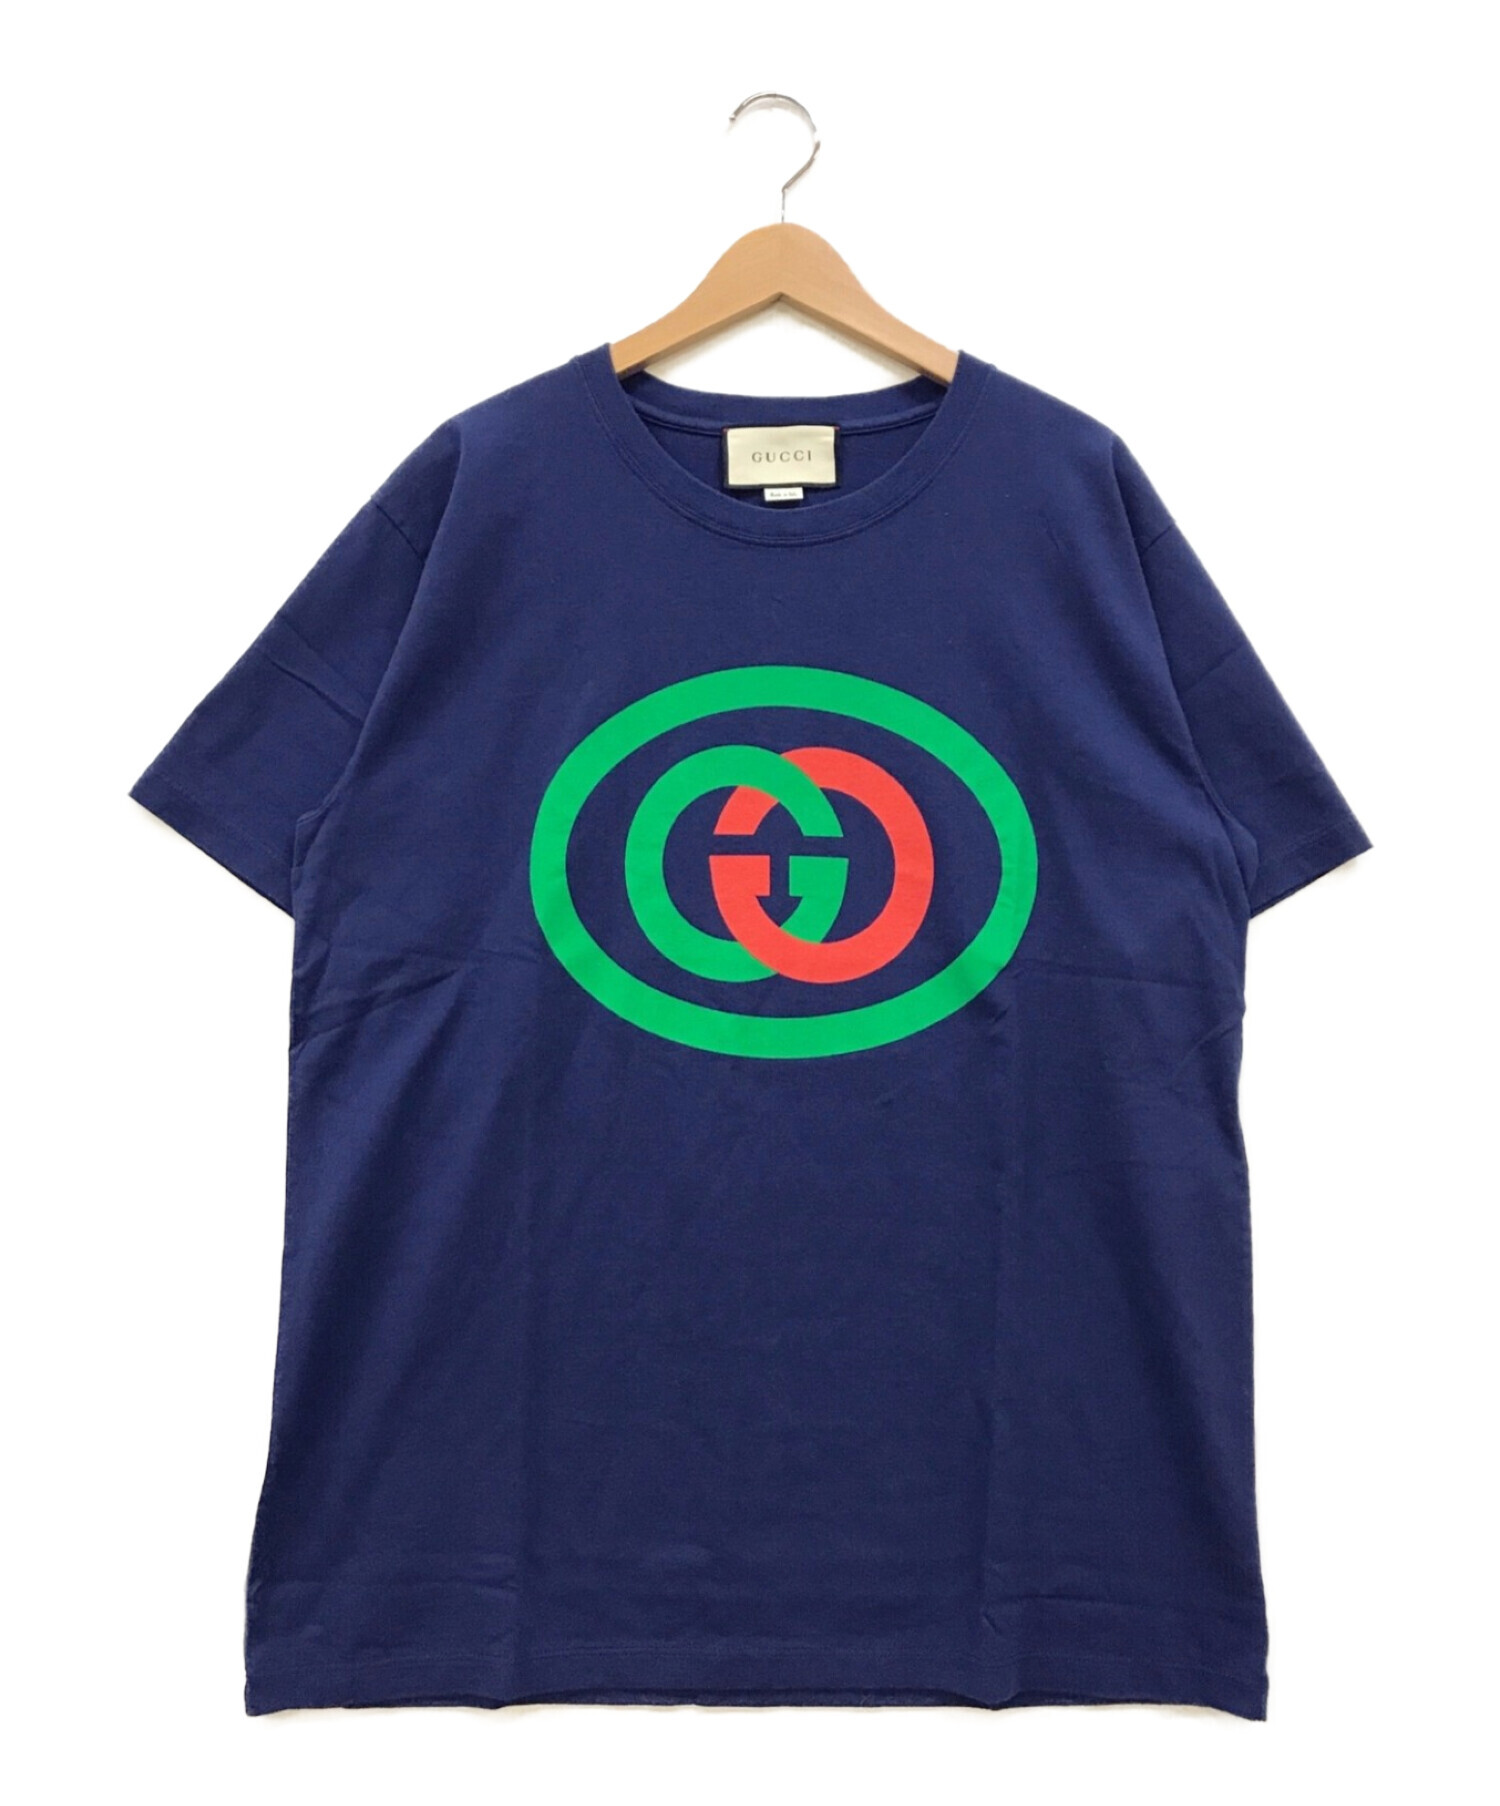 GUCCI (グッチ) インターロッキングG オーバーサイズ Tシャツ ブルー サイズ:M